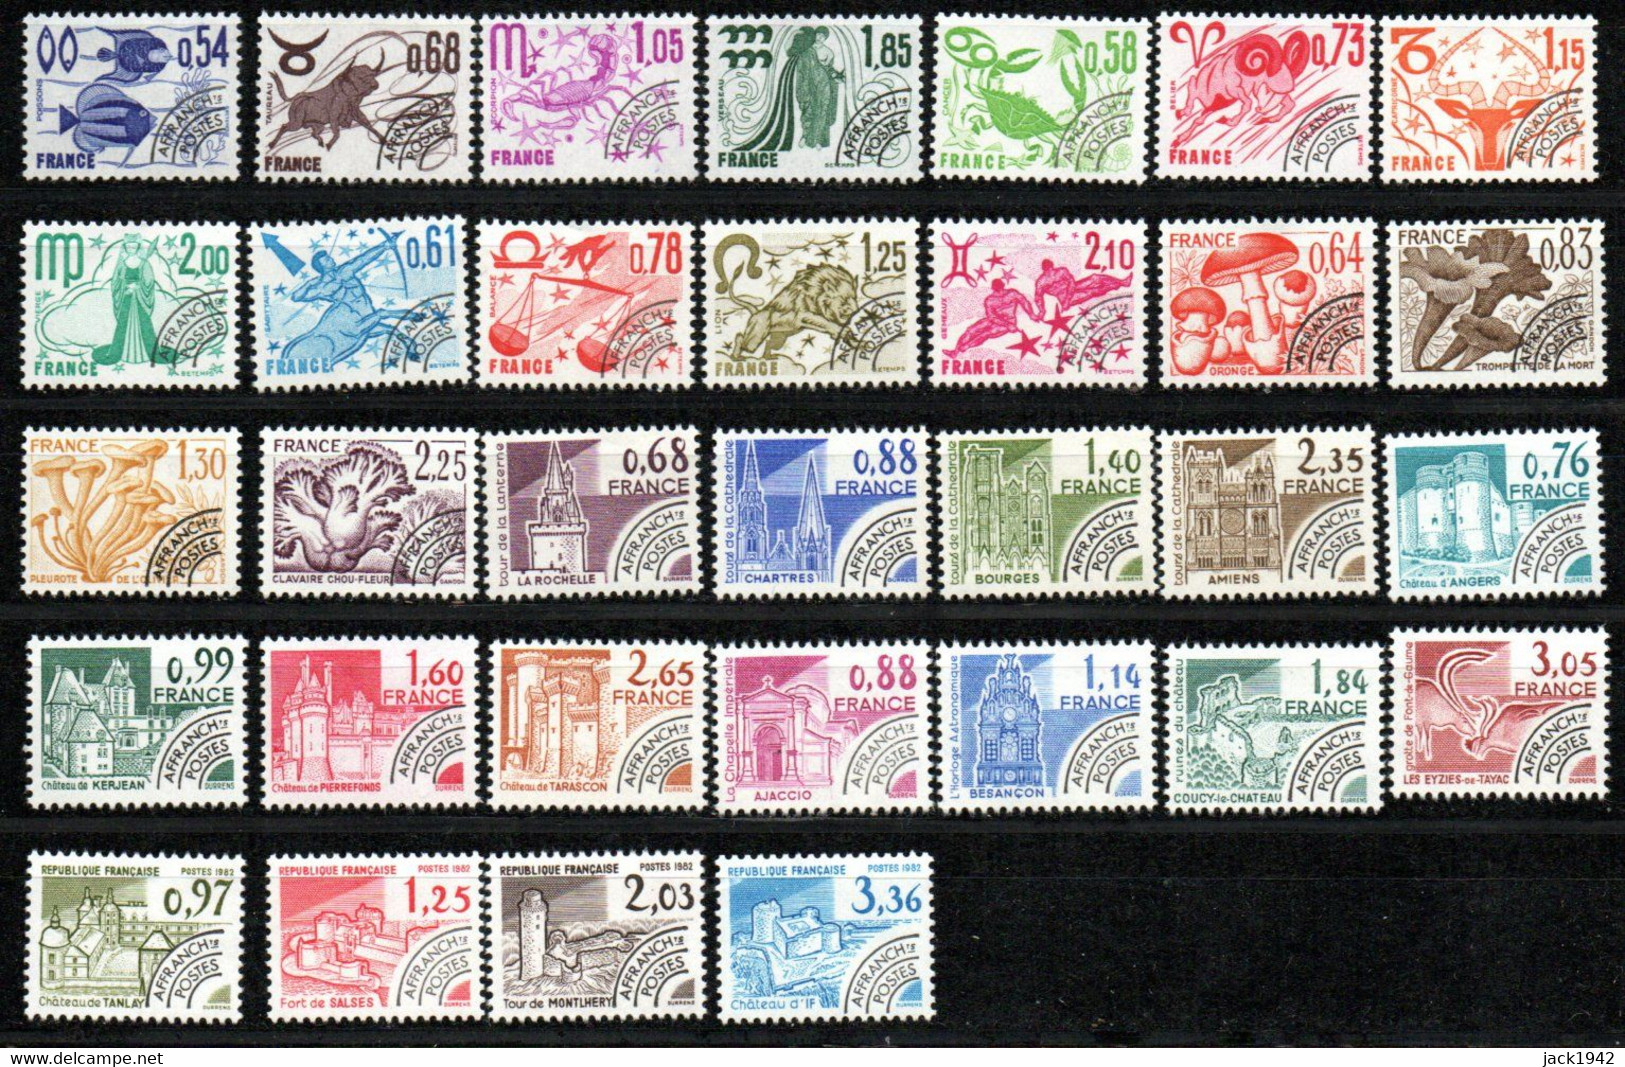 Préoblitéré Yvert N° 146 à 177 ** - Séries Signes Du Zodiaque, Champignons, Monuments Historiques - 32 Valeurs - 1964-1988